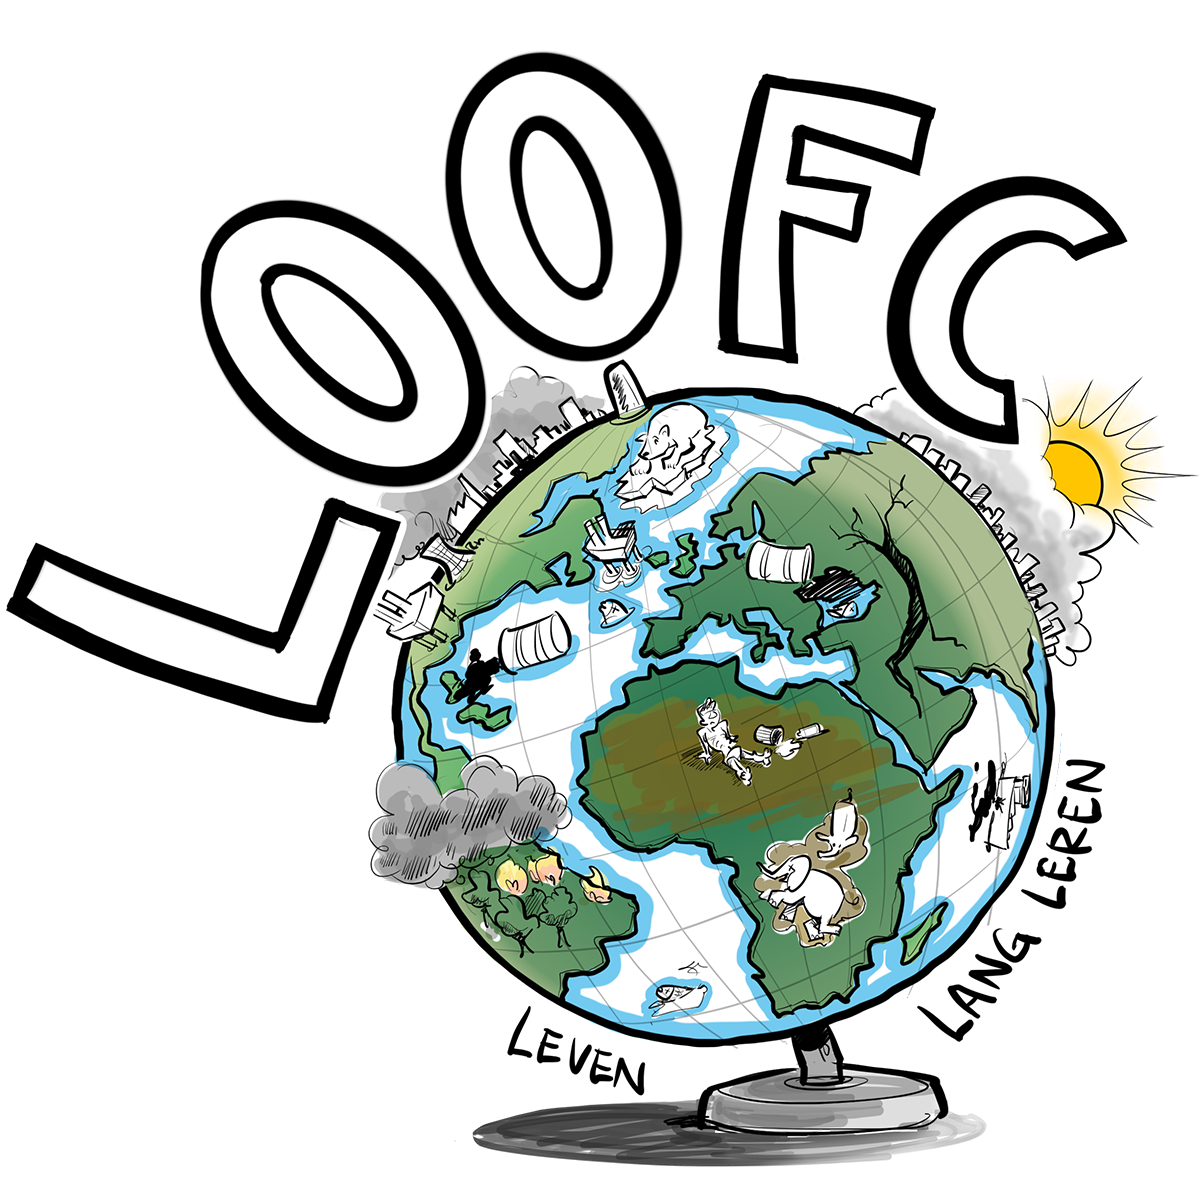 LOOFC logo wereldbol